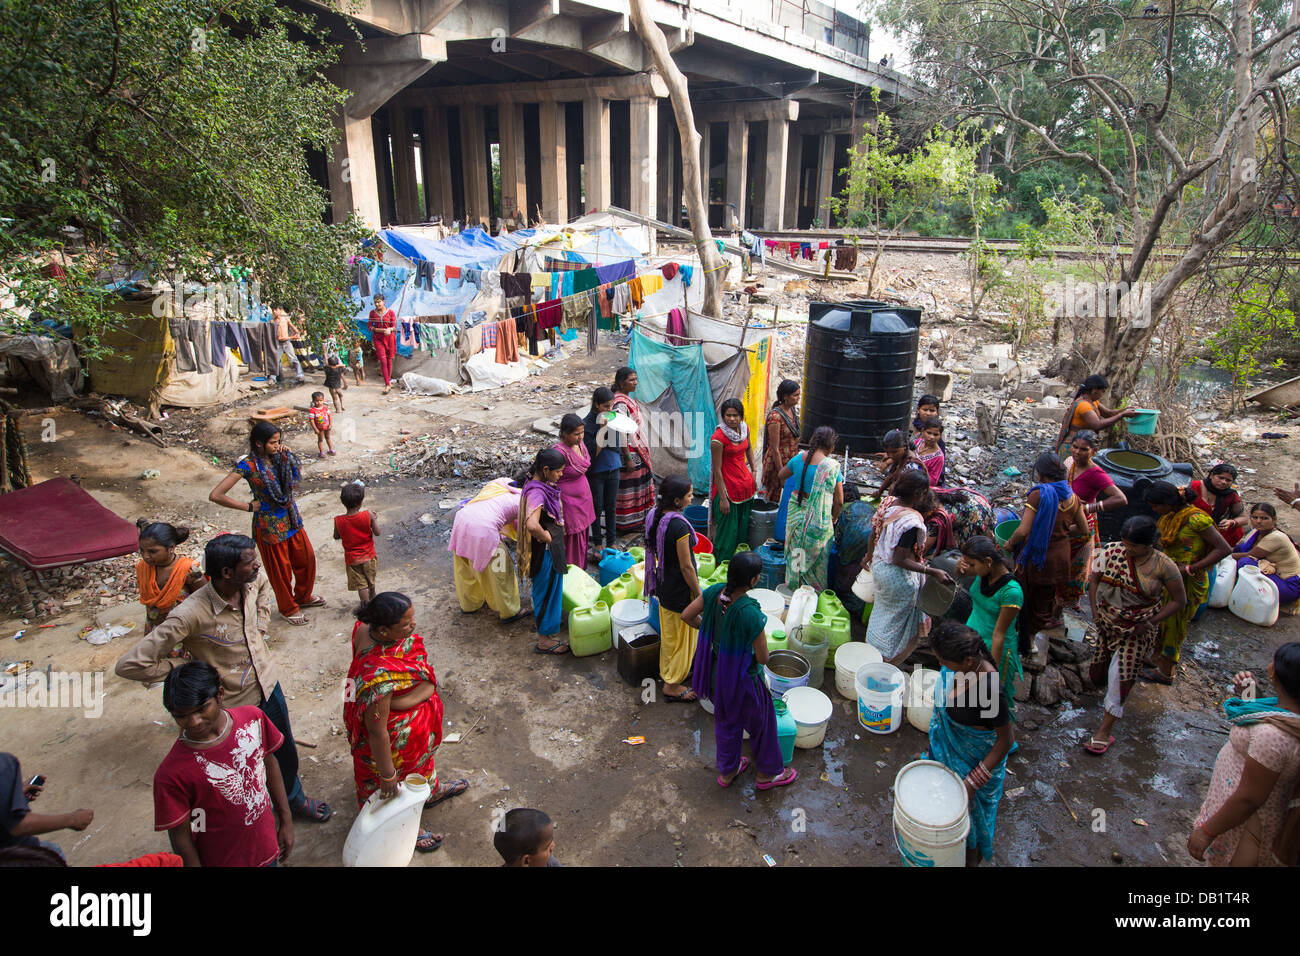 Les femmes des bidonvilles village tente de recueillir l'eau après un gouvernement distribution, New Delhi, Inde Banque D'Images